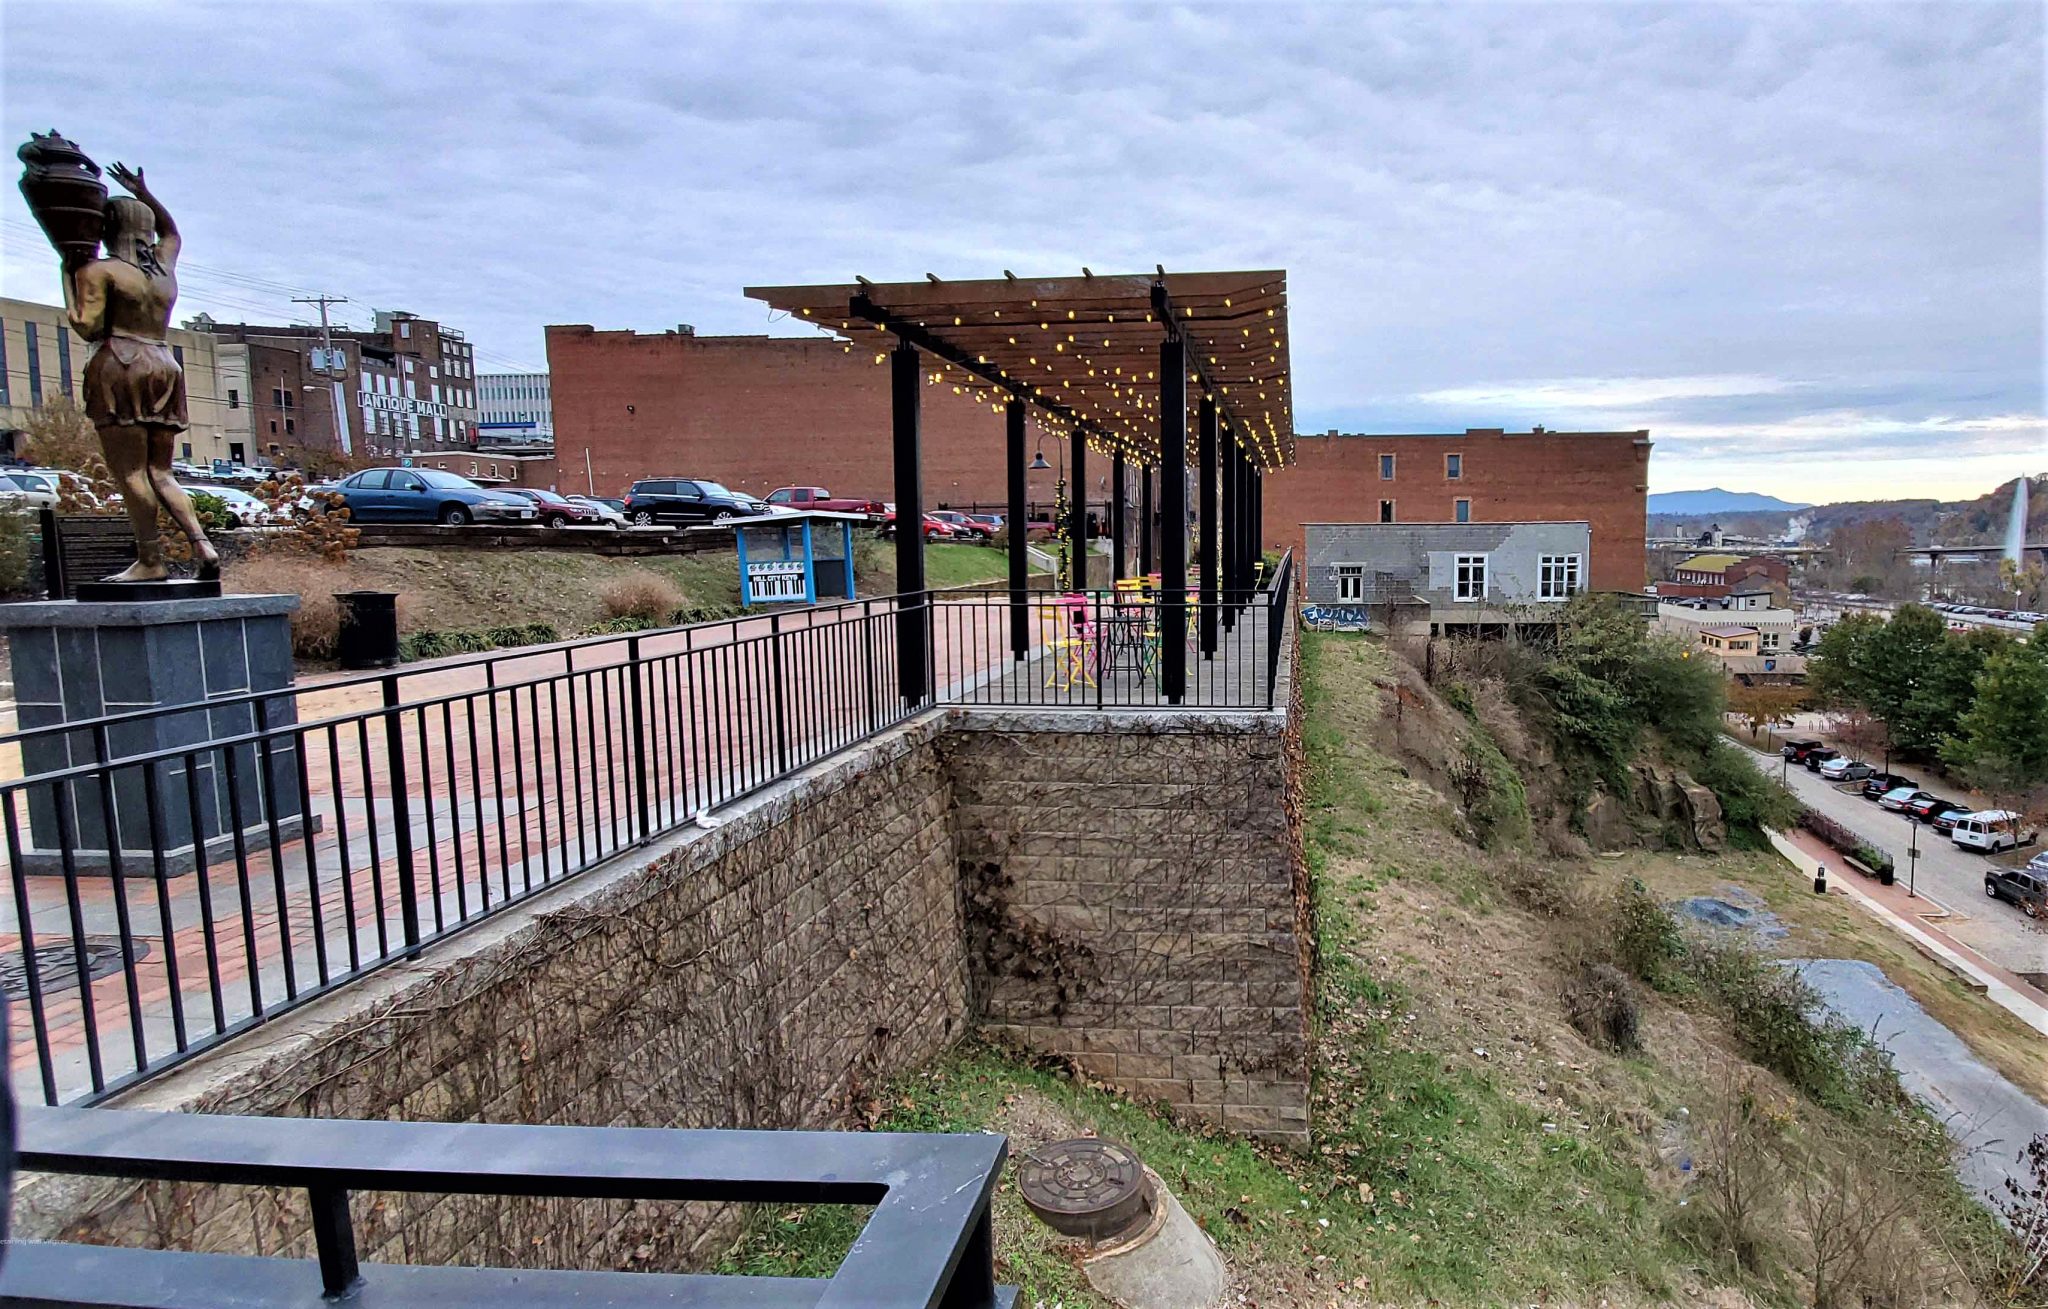 The Bluffwalk Retaining Walls in Lynchburg, Virginia